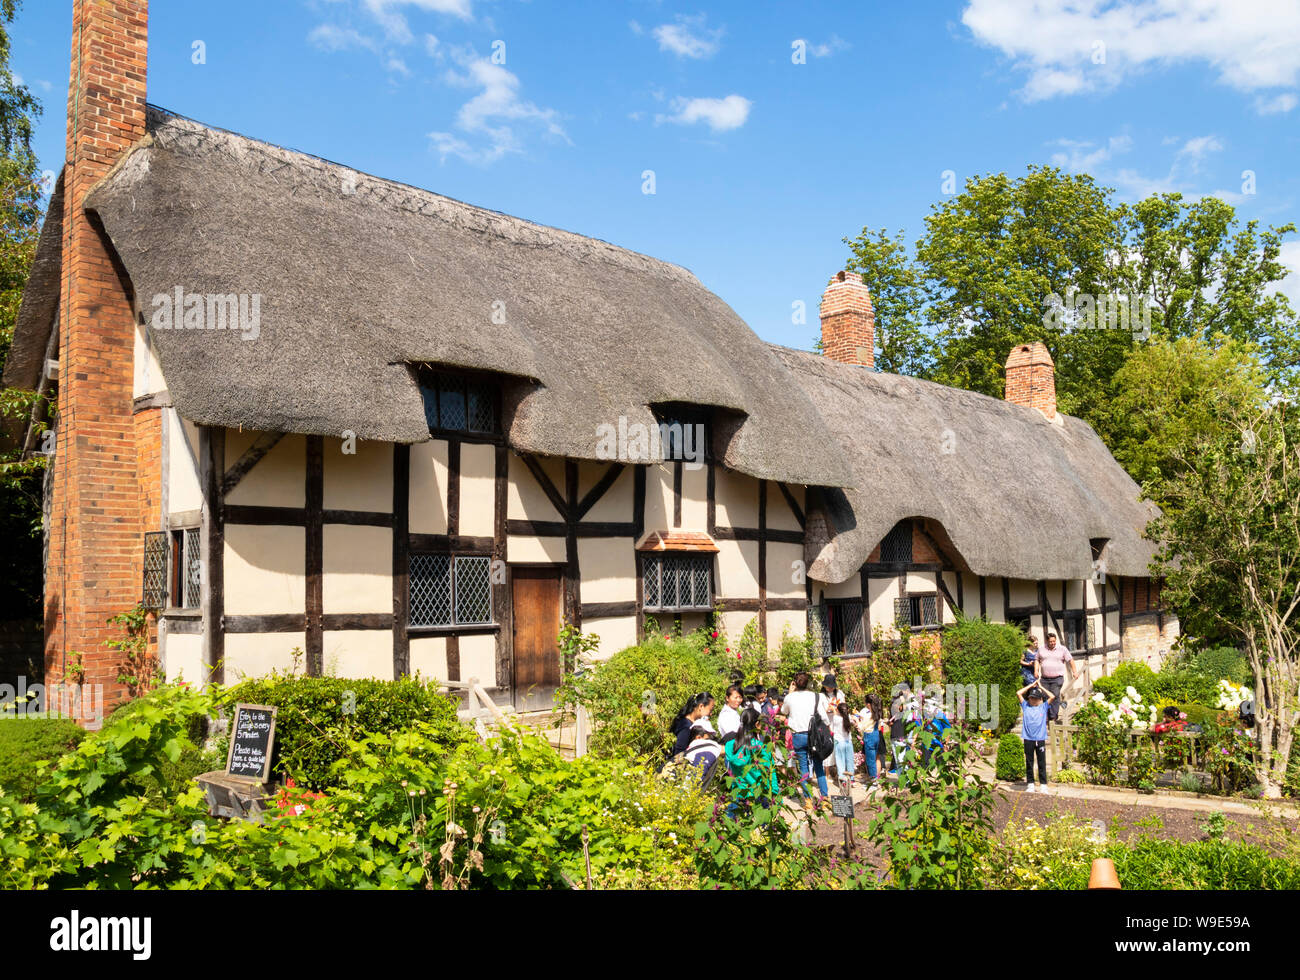 Anne Hathaway Cottage est un cottage de chaume dans un jardin de cottage anglais Shottery près de Stratford upon Avon Warwickshire Angleterre GB Europe Banque D'Images